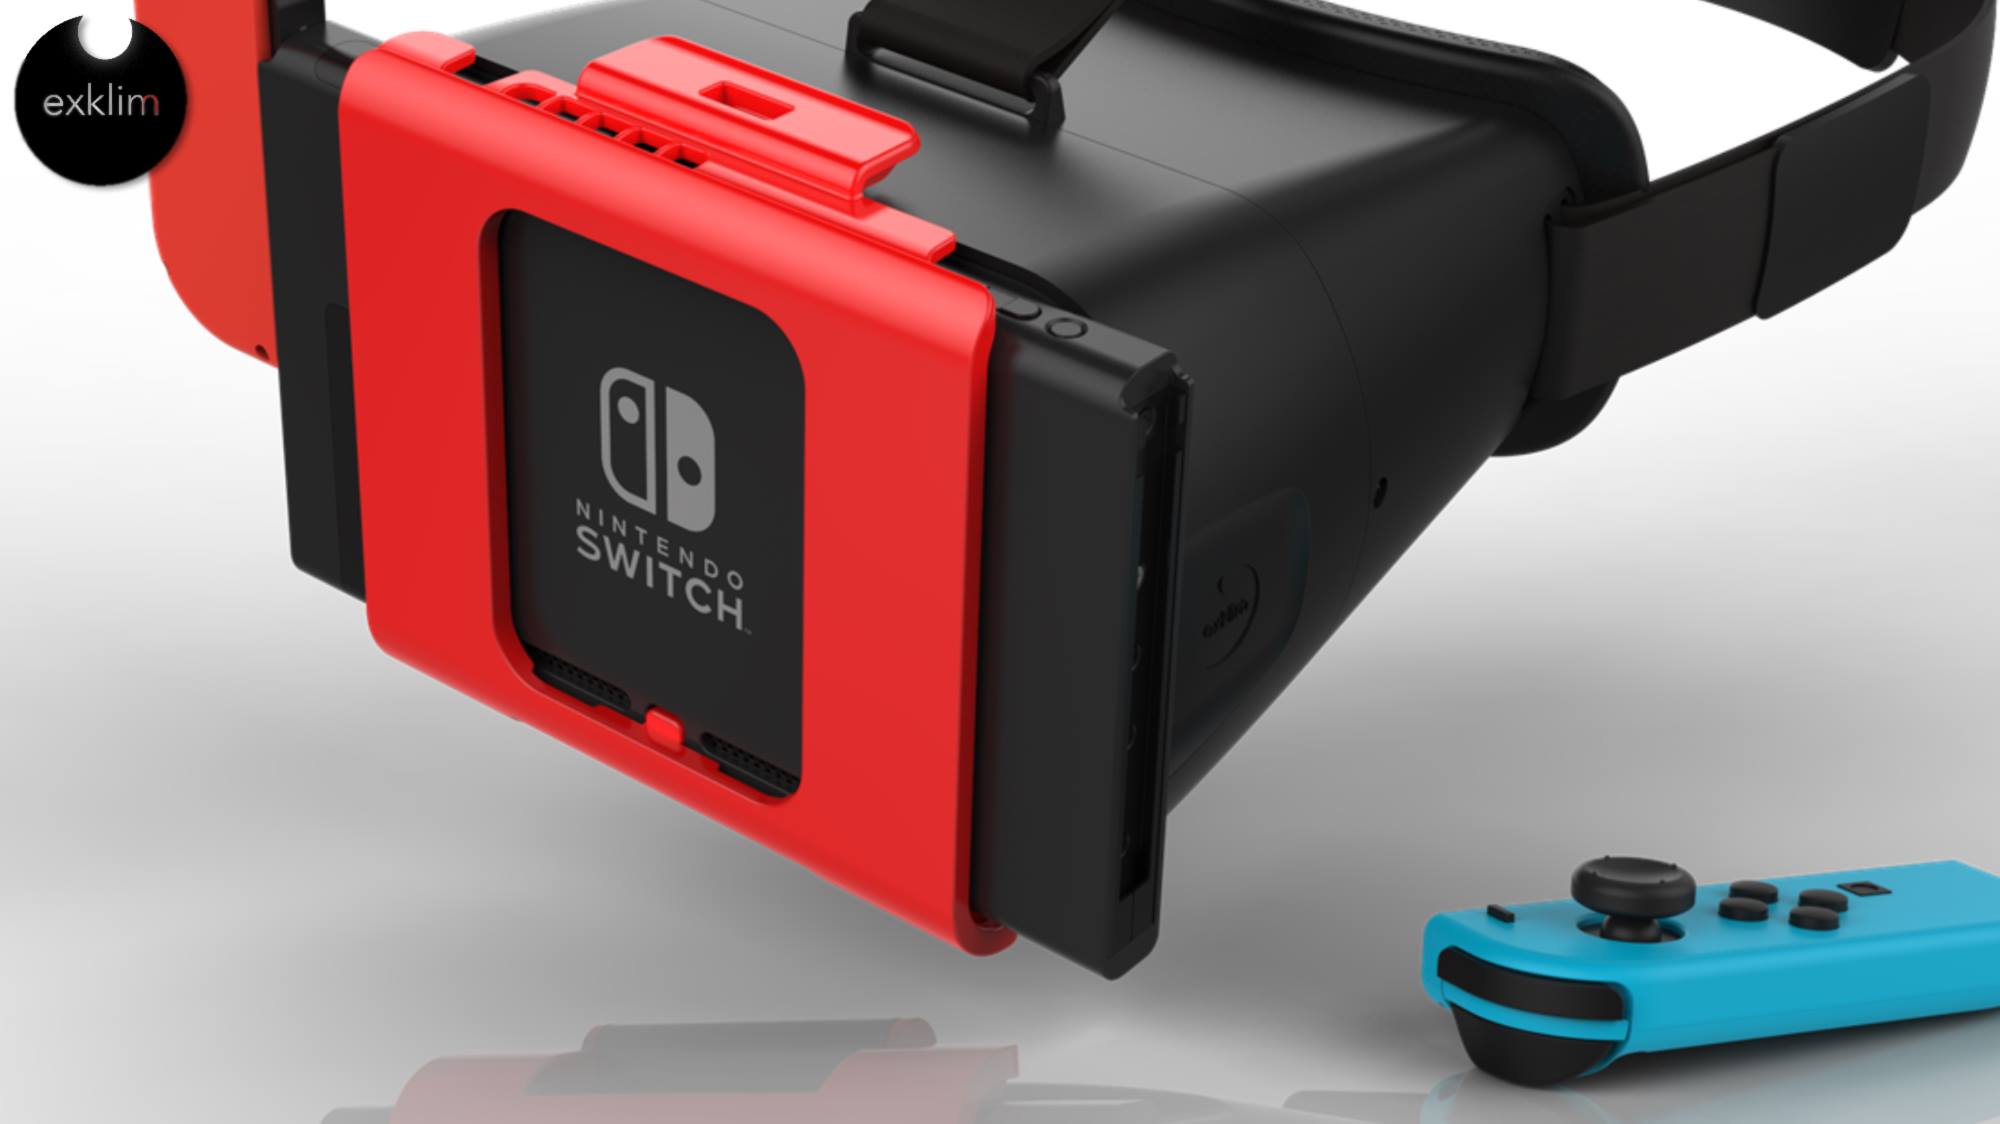 Nintendo switch 3d. ВР очки для Нинтендо свитч. Nintendo Switch VR. Очки виртуальной реальности для Нинтендо свитч. Nintendo Switch VR шлем.